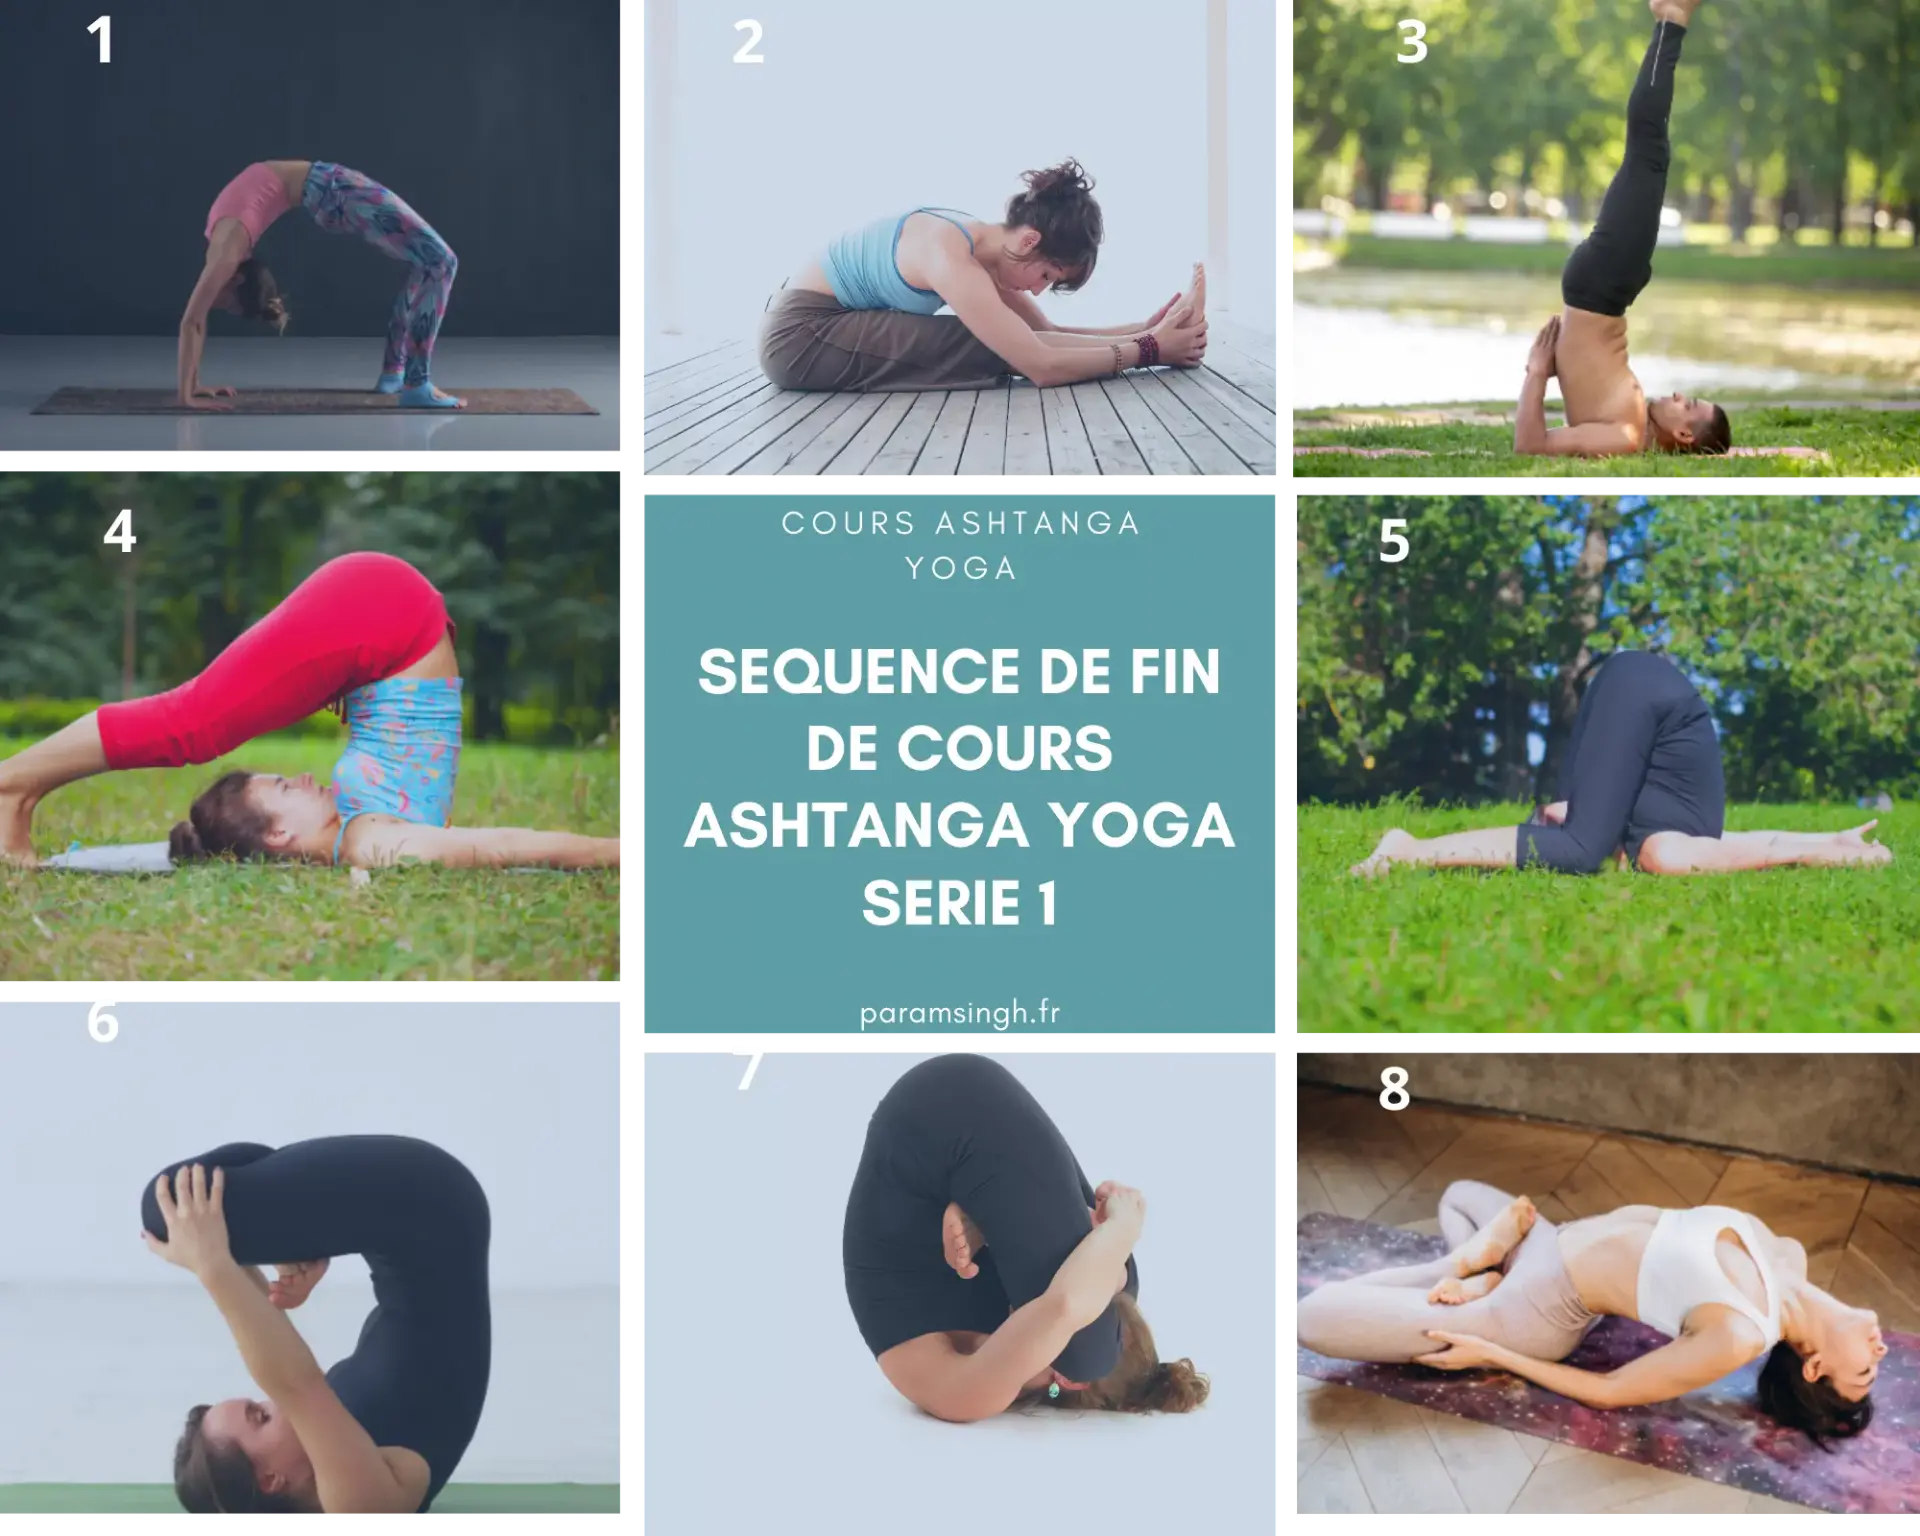 La séquence d'asanas de fin de cours ashtanga yoga série 1